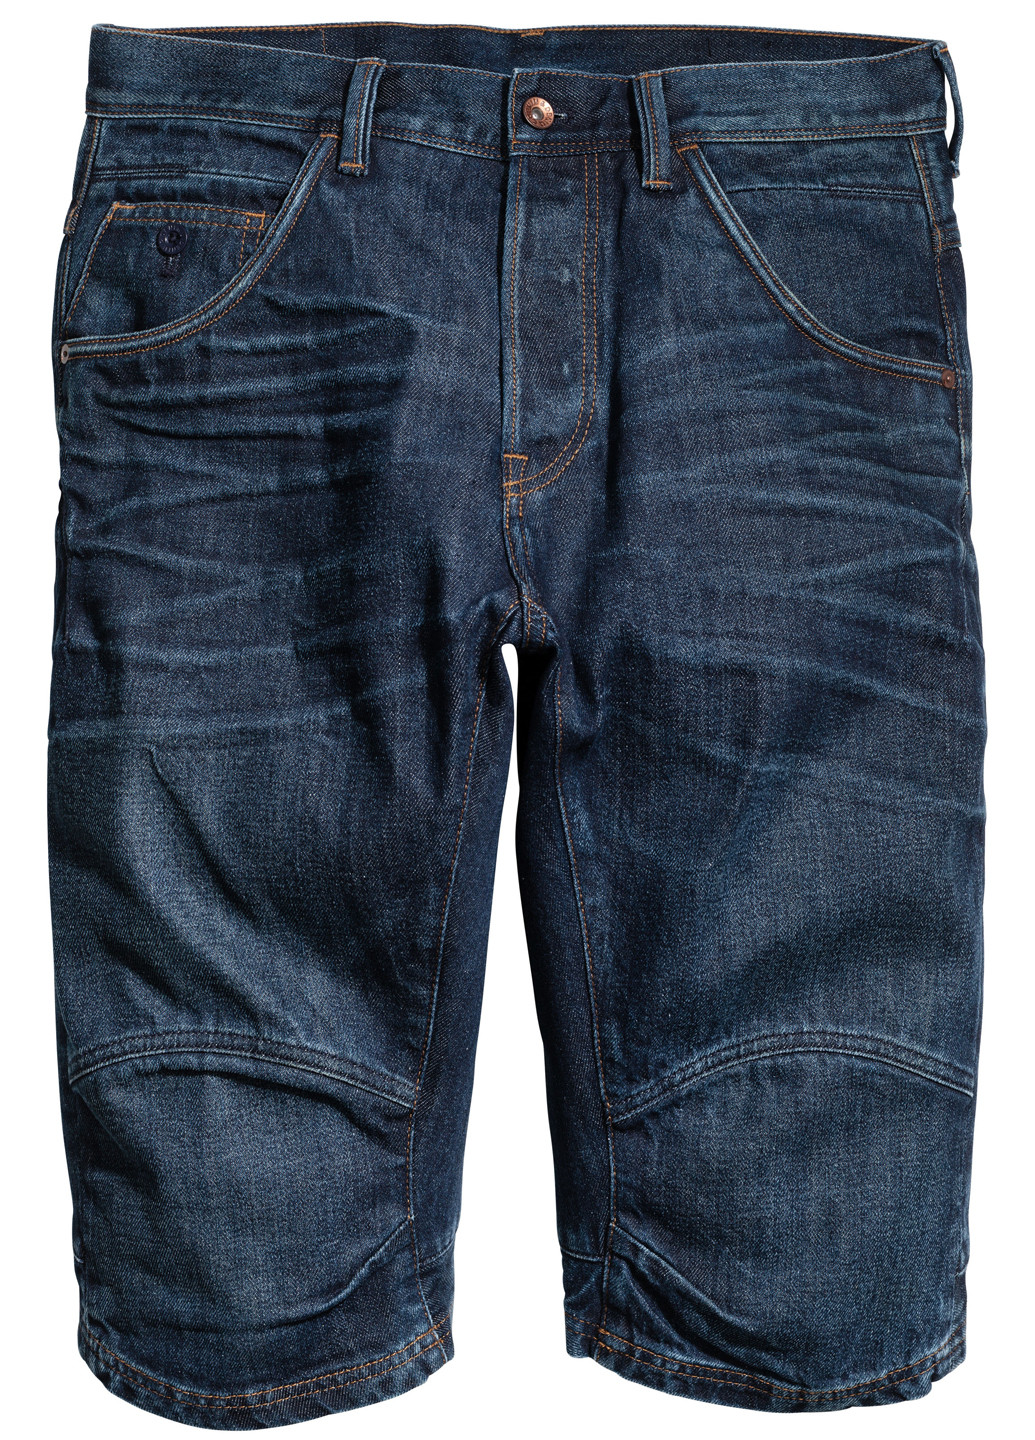 Шорты H&M однотонные тёмно-синие джинсовые